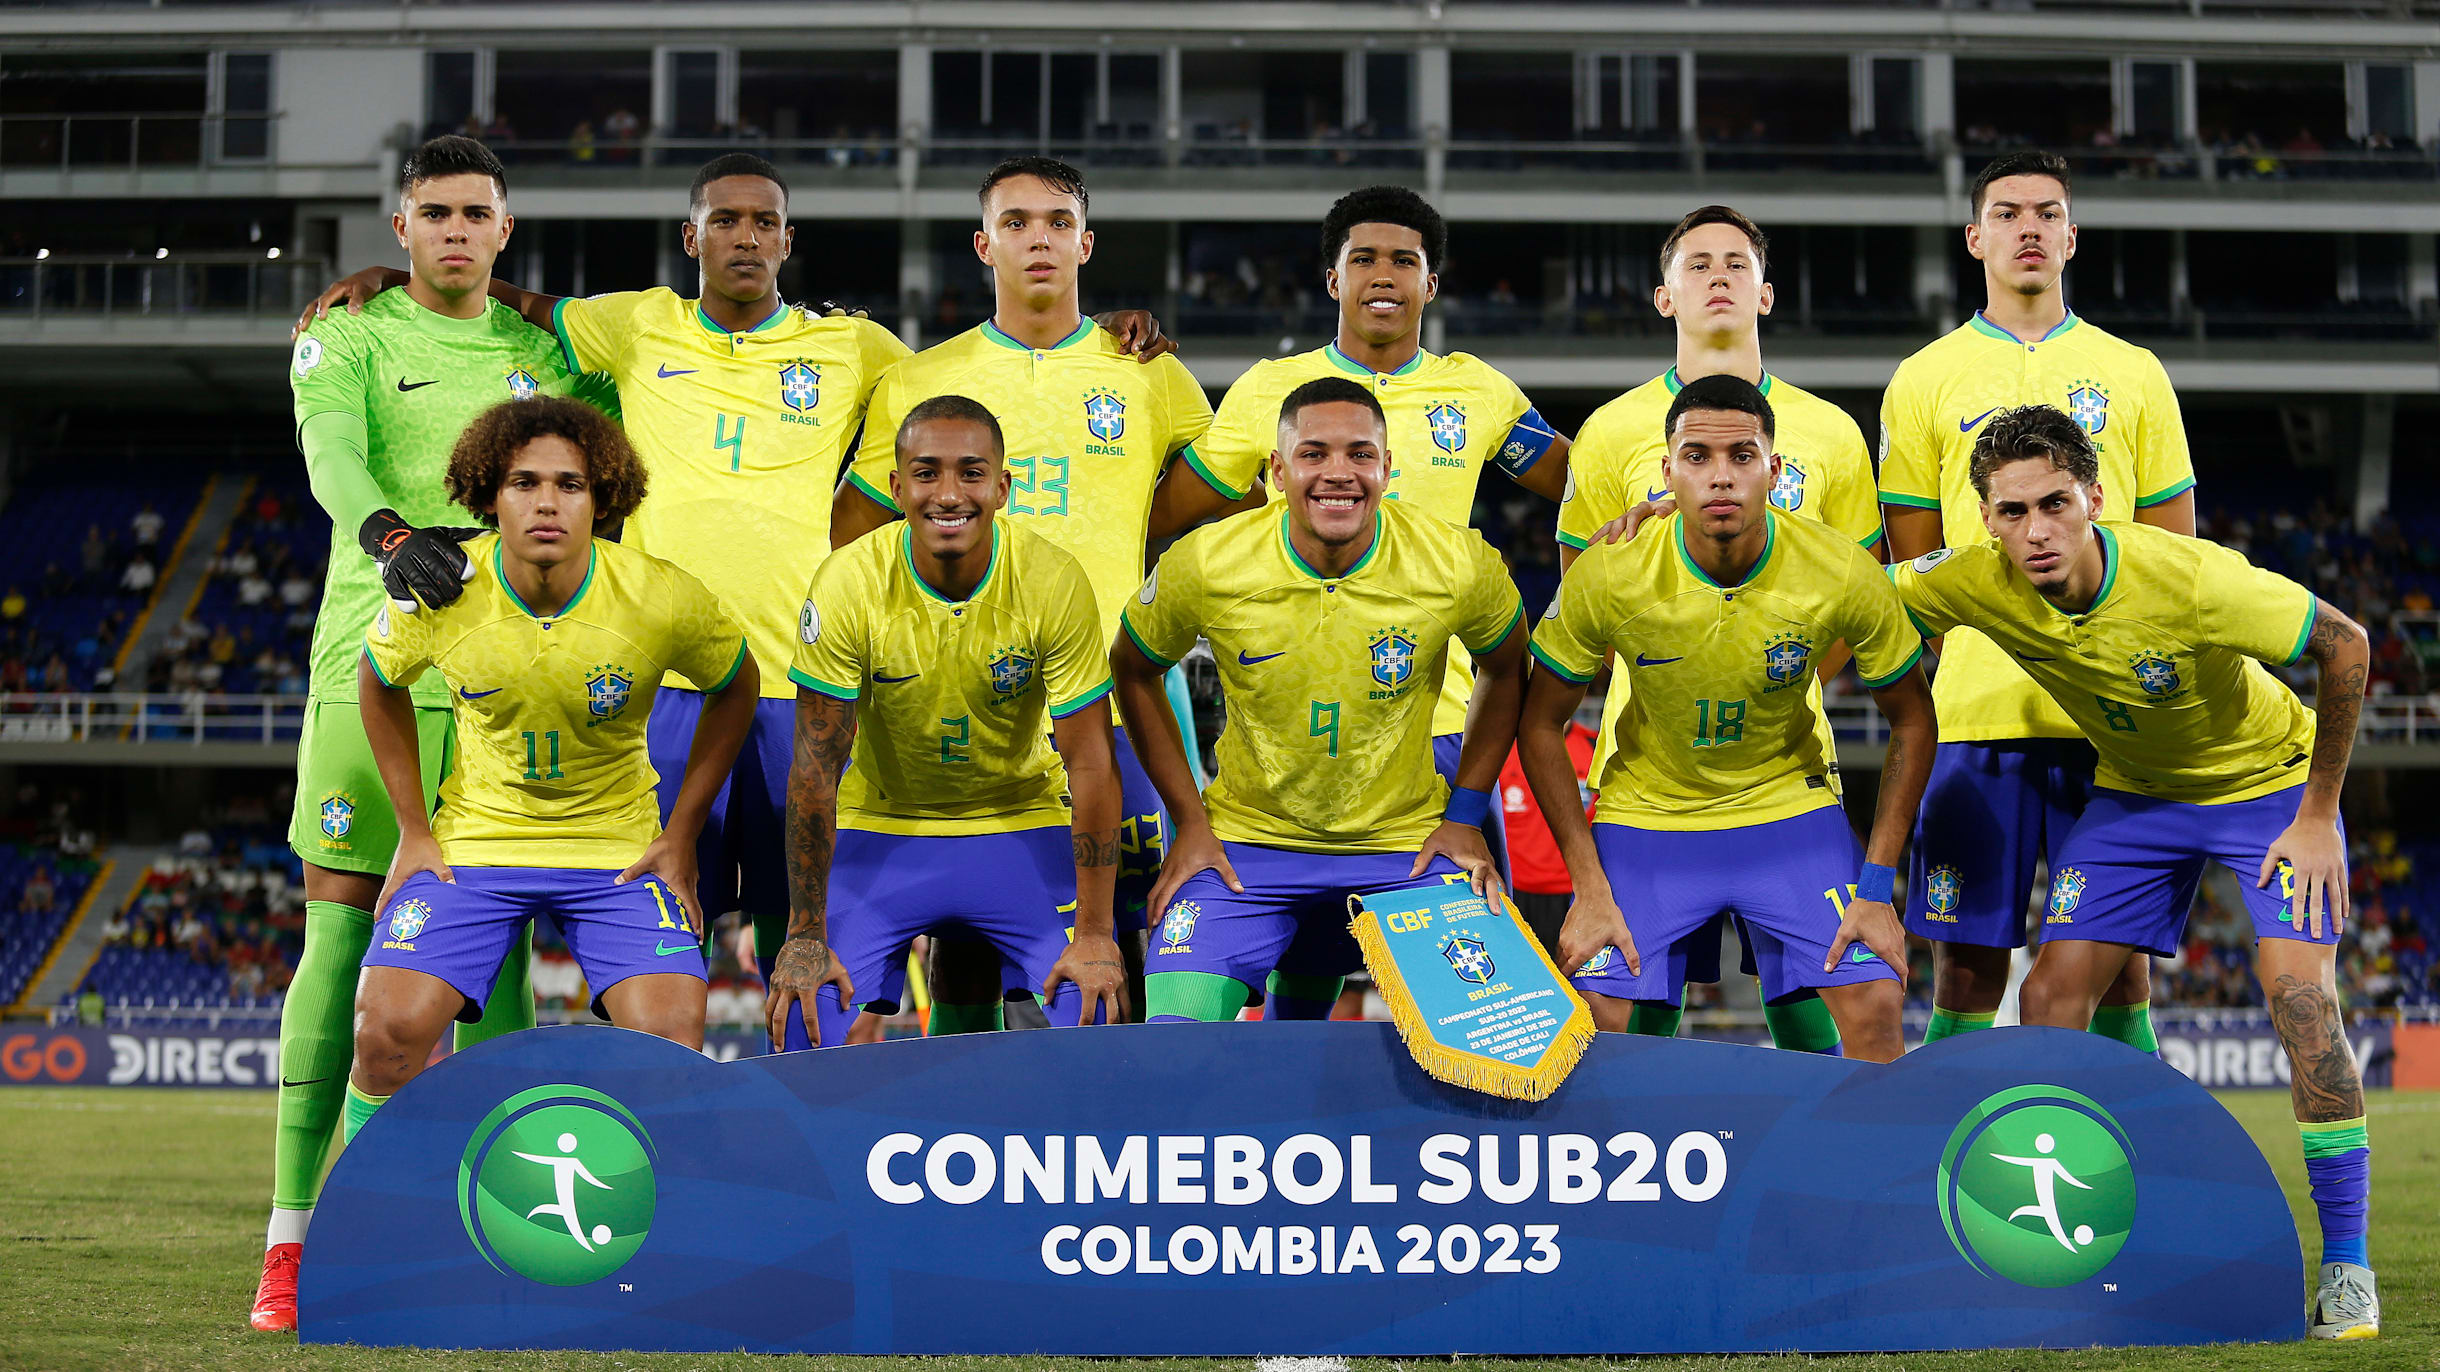 Quanto foi o jogo da seleção brasileira sub-20 ontem?